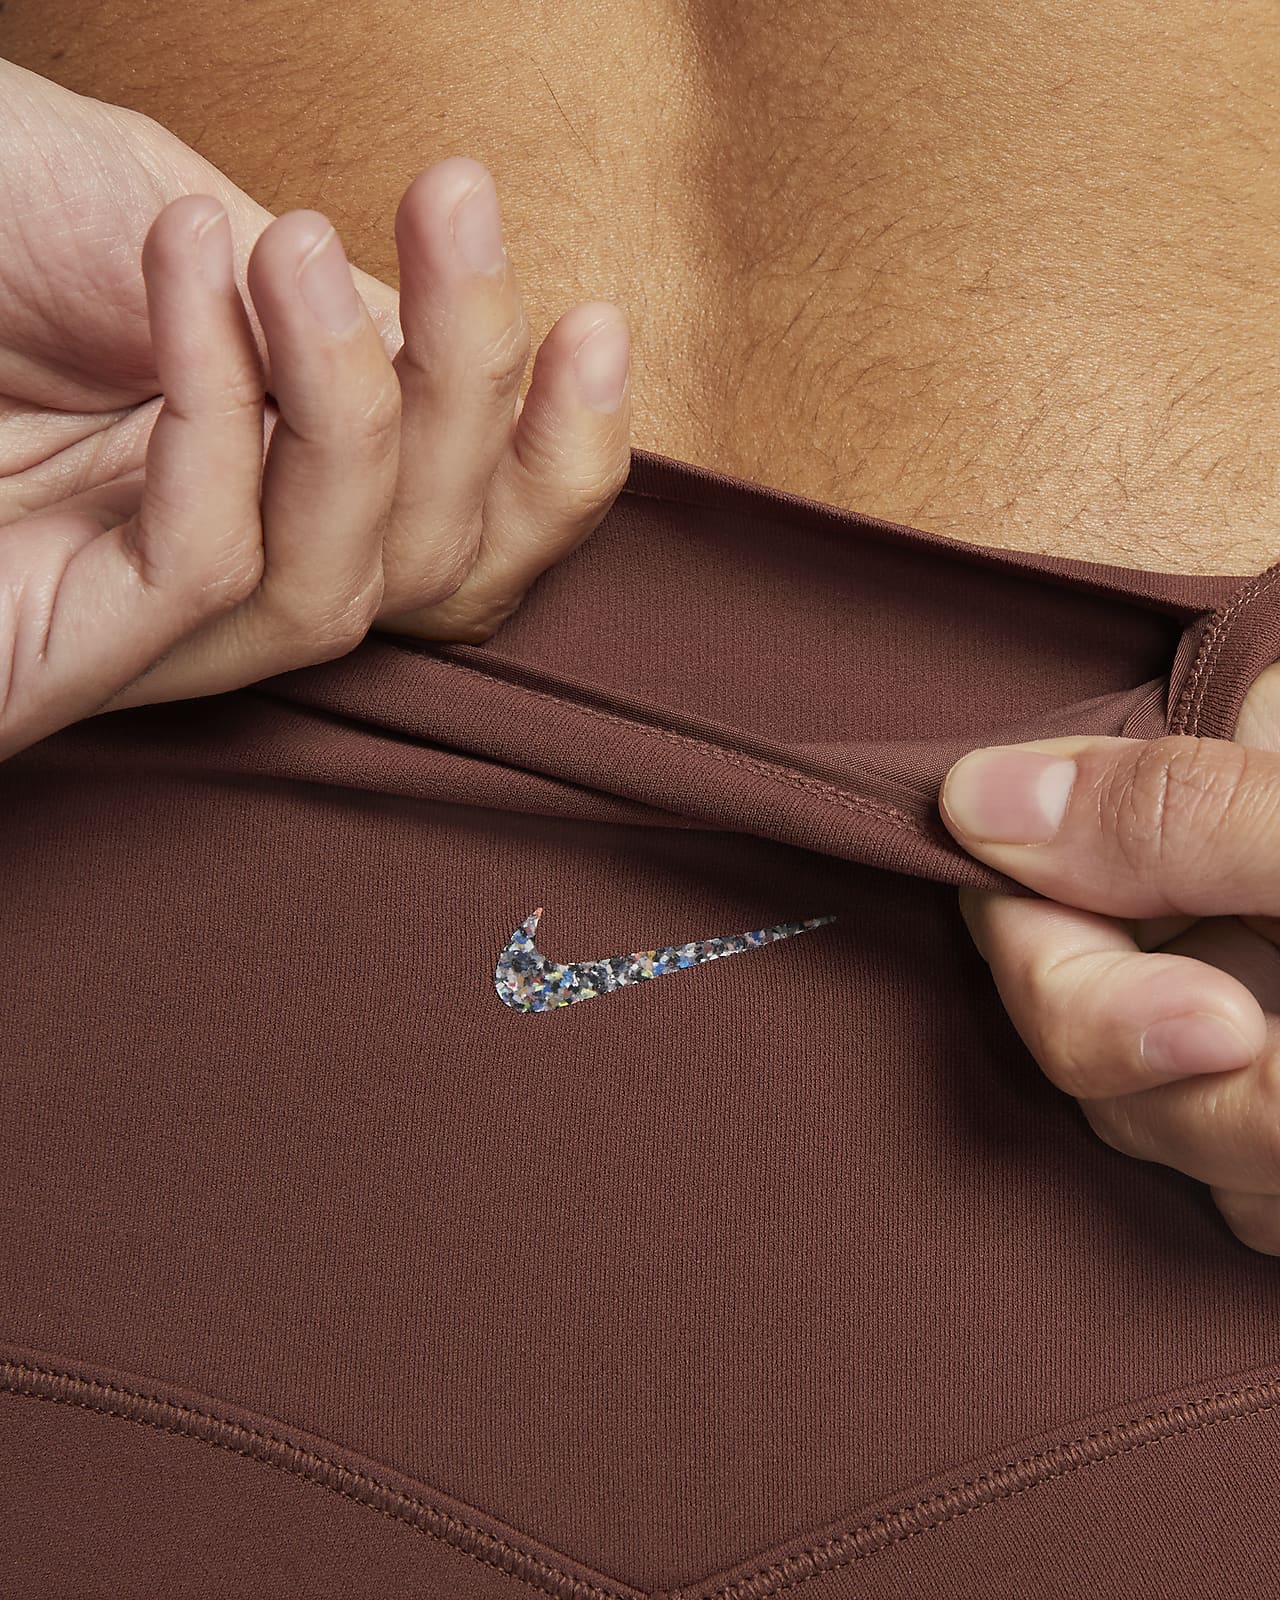 Buy Nike Brown Logo-tape High-waist Flared Leggings for Girls in